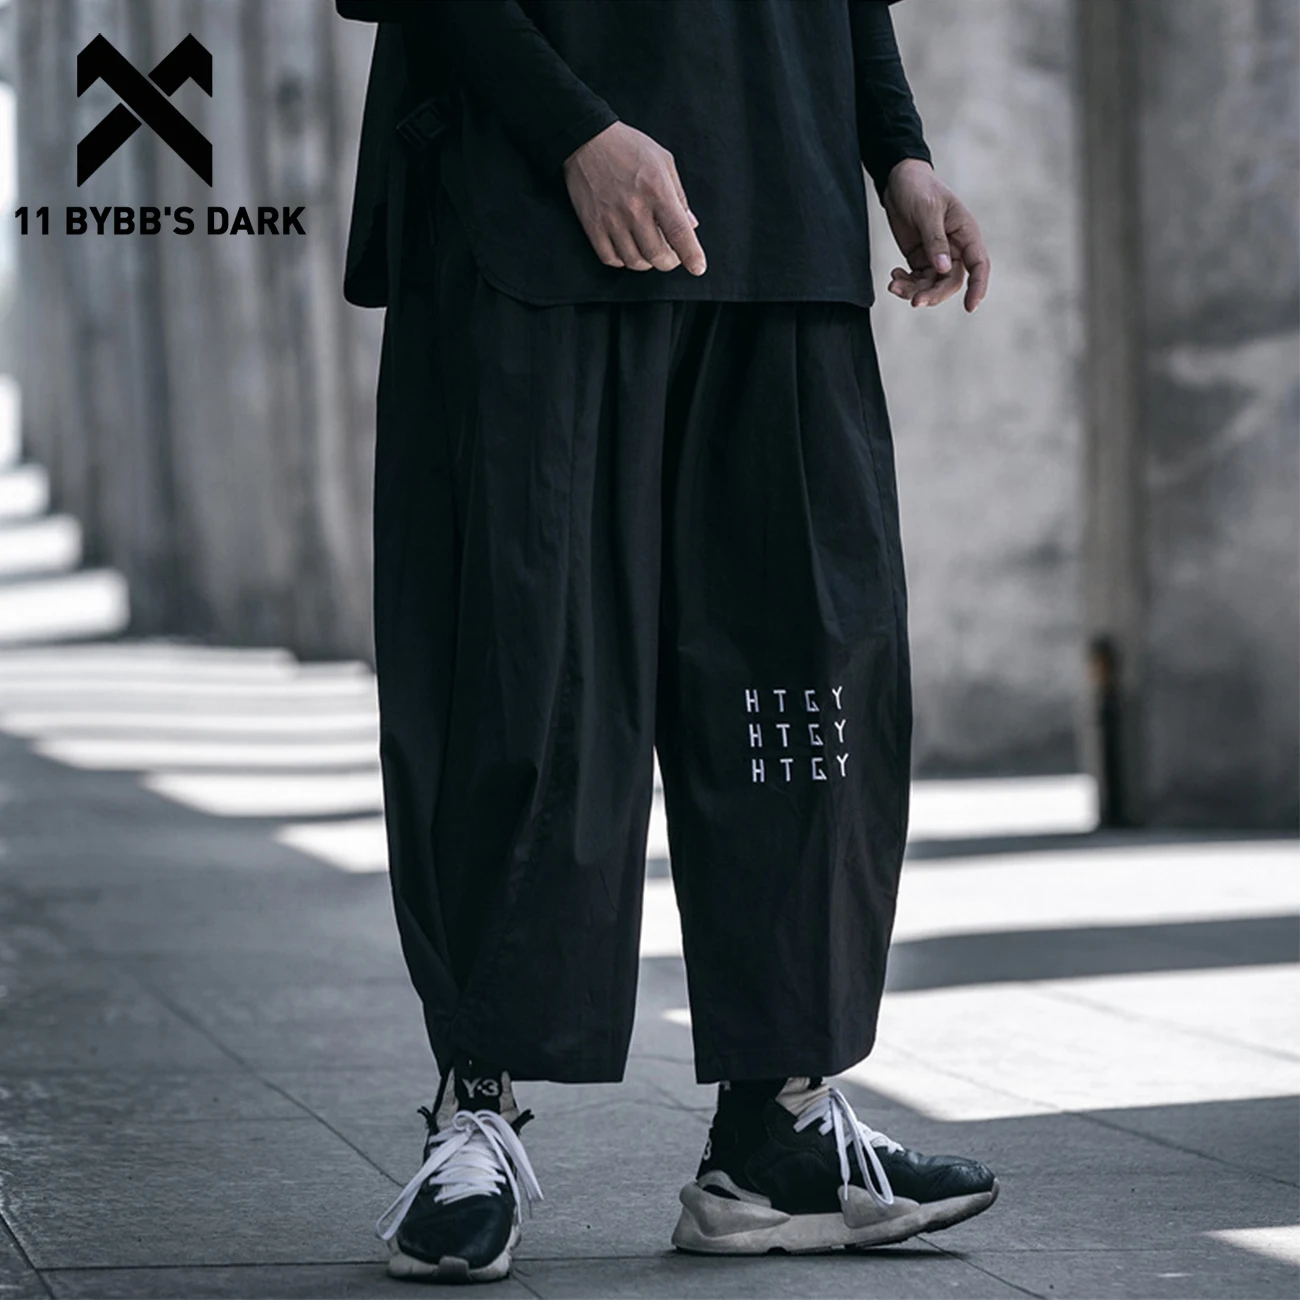 Японские функциональные Брюки 11 BYBB'S DARK в стиле хип-хоп уличная одежда 2020 с